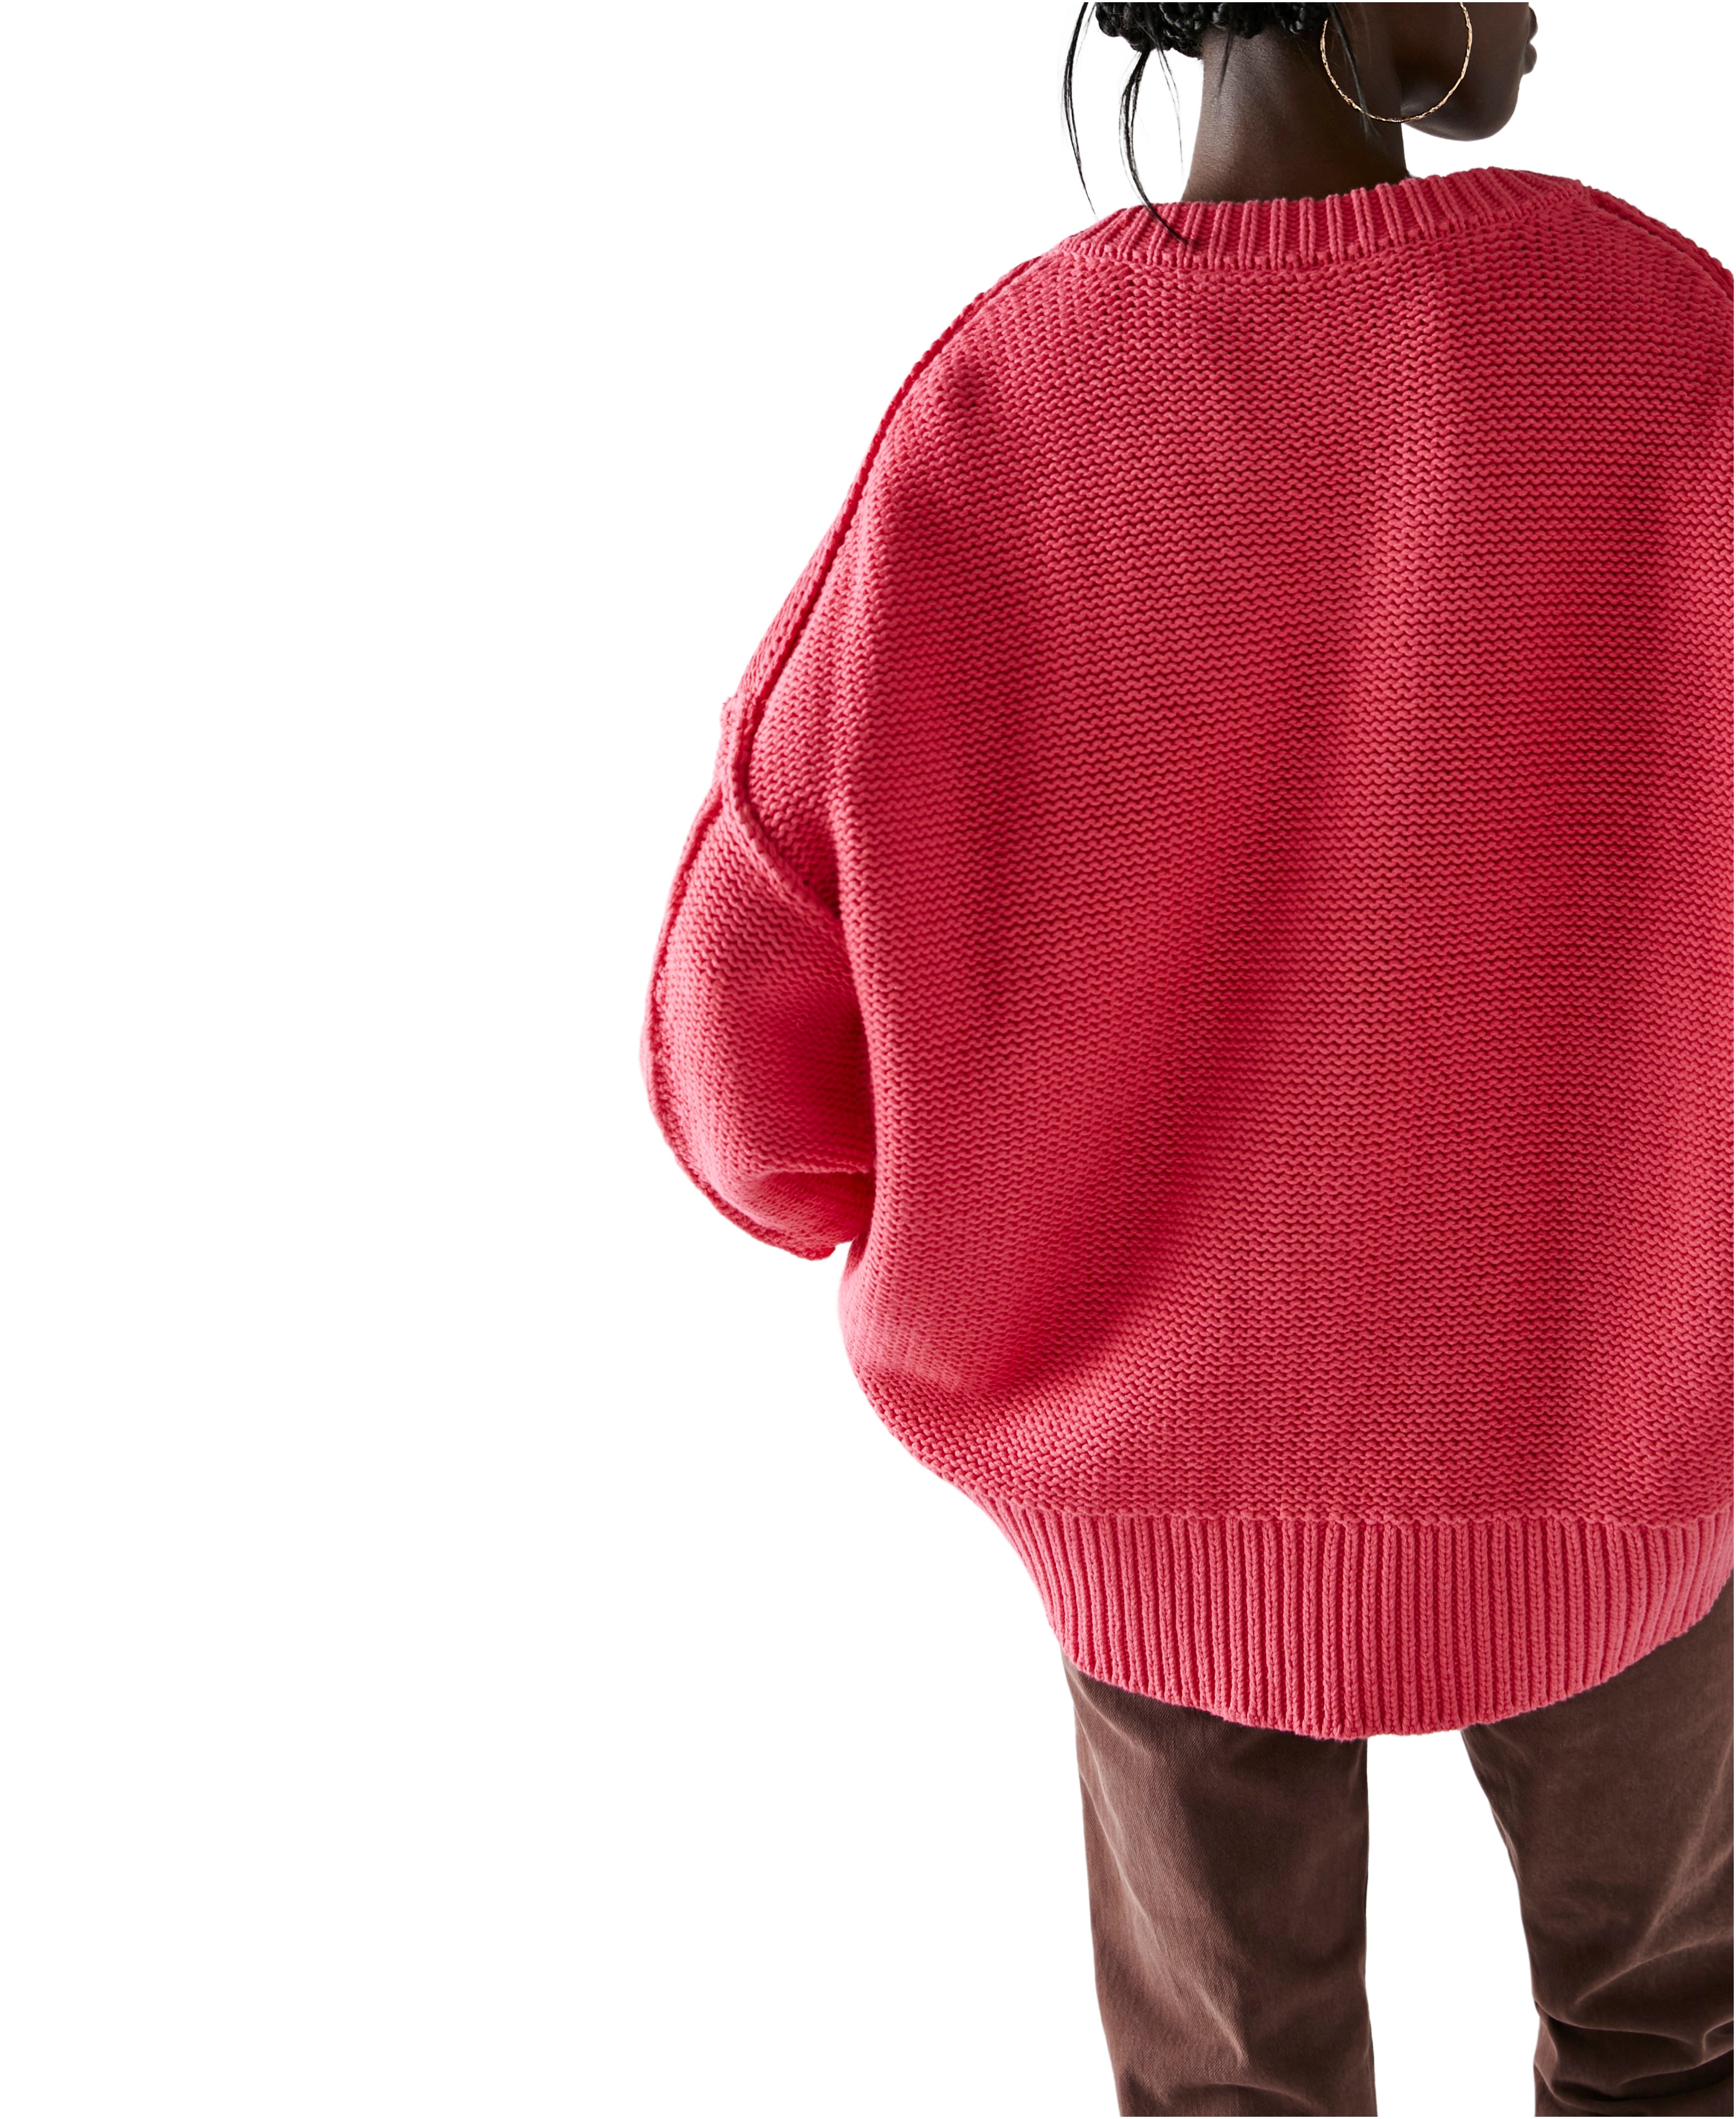 Alli V-Neck Sweater